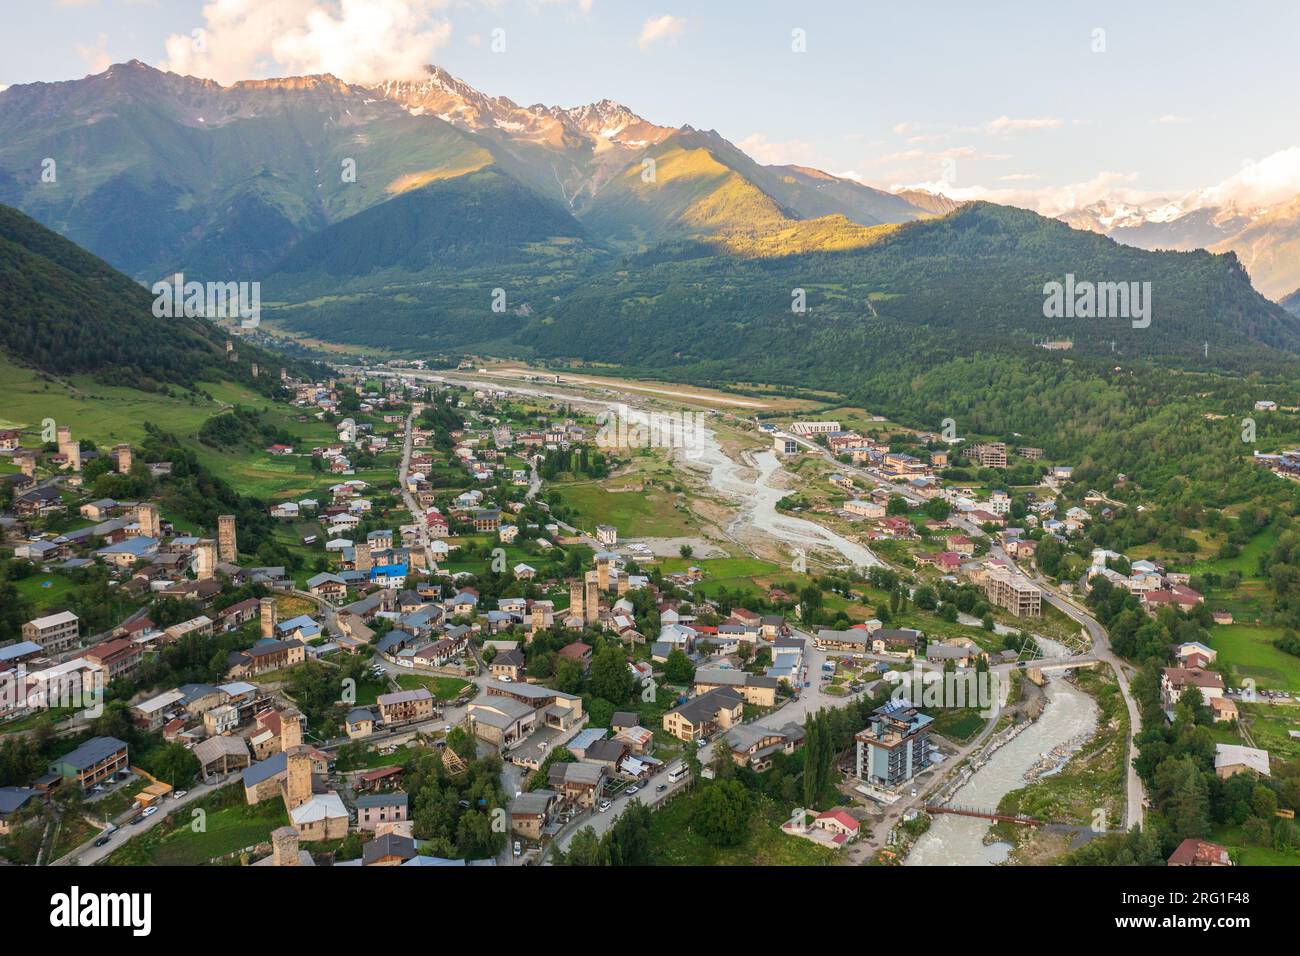 Città di Mestia in Svaneti, vista aerea dal drone. Famoso luogo storico georgiano con le Svan Towers. Foto Stock